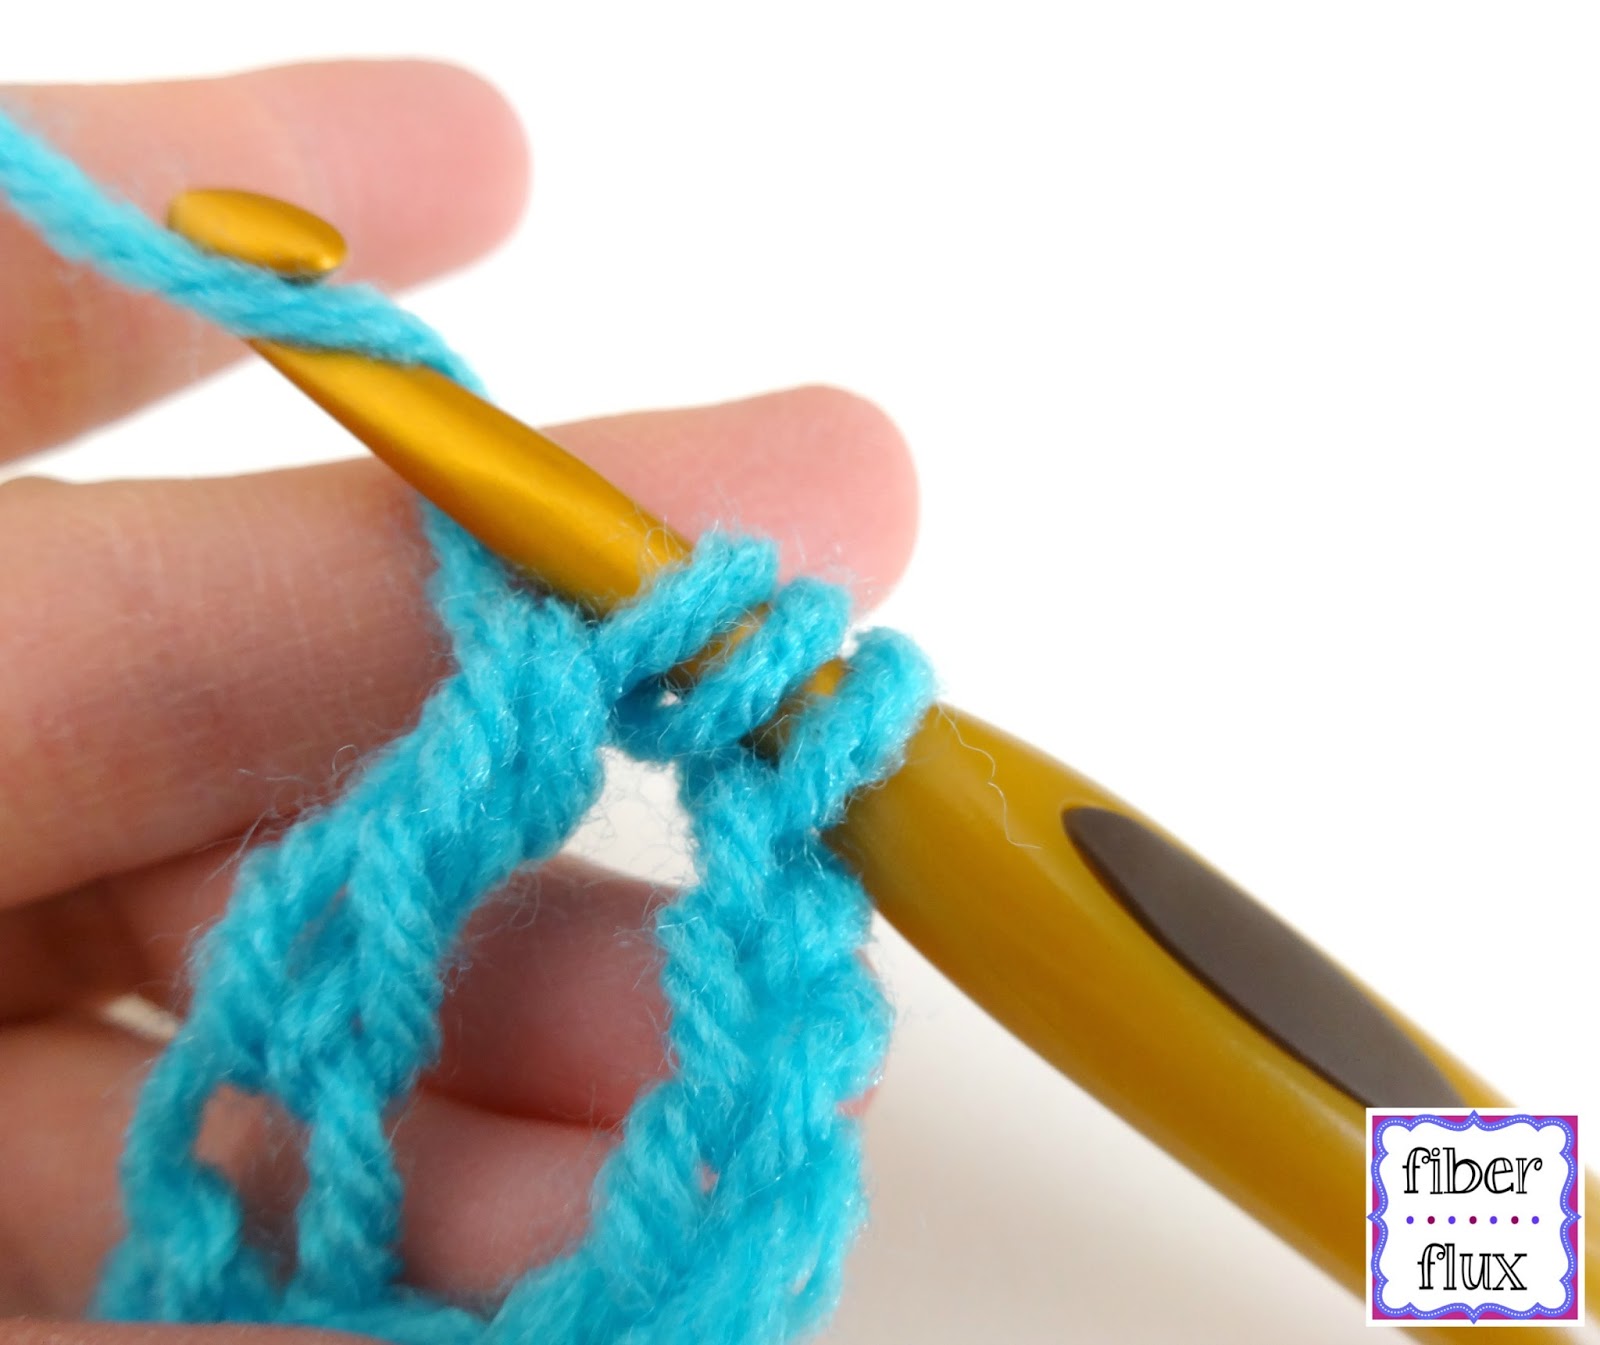 Fiber Flux: How To Crochet the Double Treble Crochet Stitch (dtr) Photo